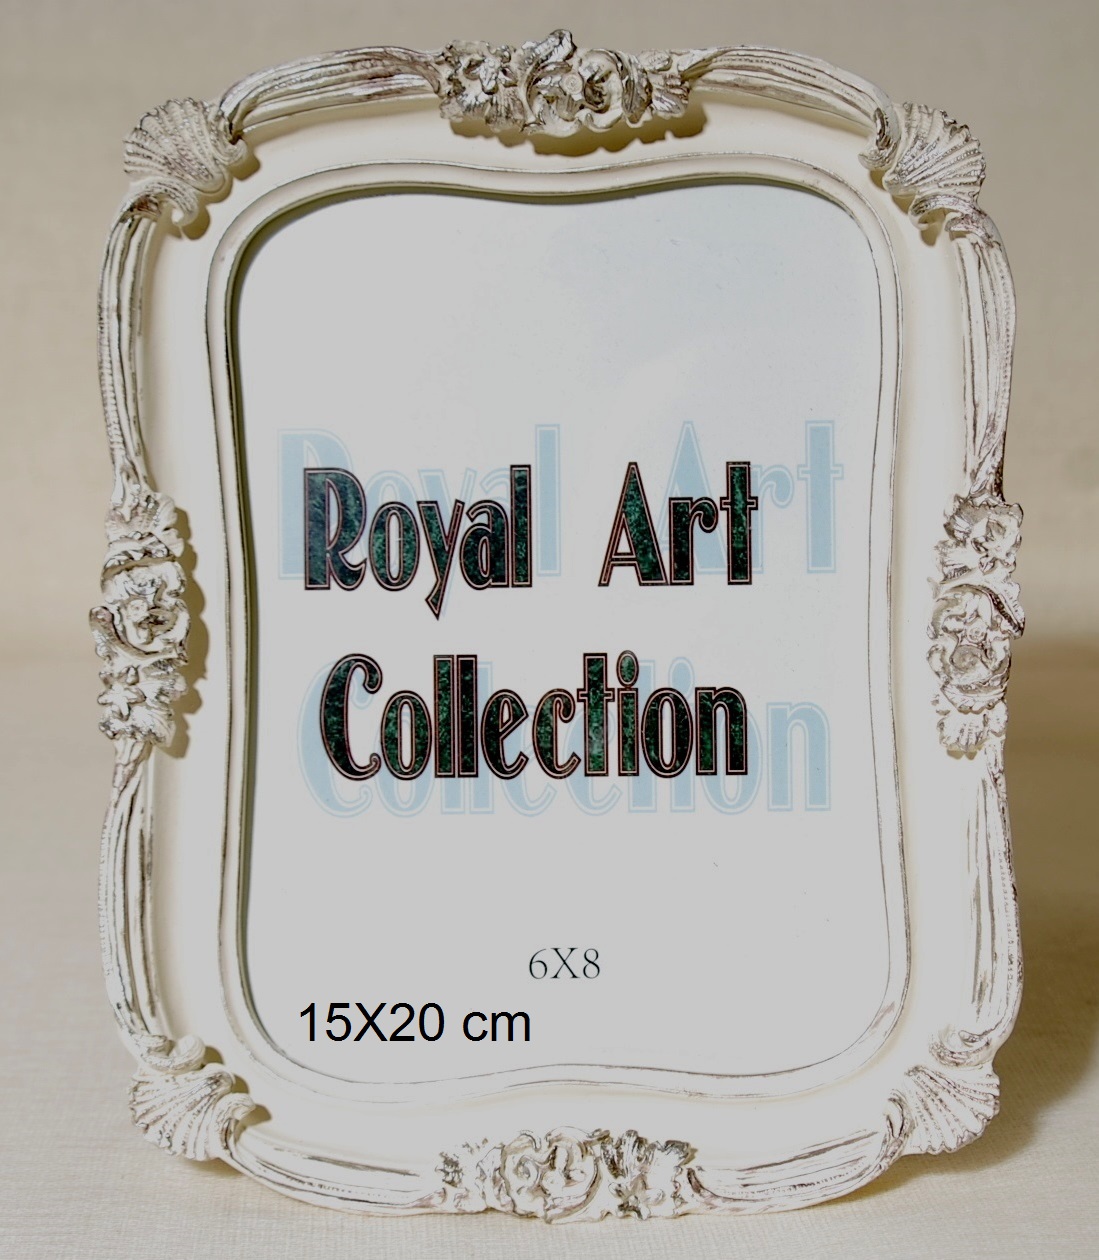 Κορνίζα Πολυεστερική Royal Art 15×20εκ. YUA3/809/68CR (Χρώμα: Κρεμ, Υλικό: Πολυεστερικό) – Royal Art Collection – YUA3/809/68CR